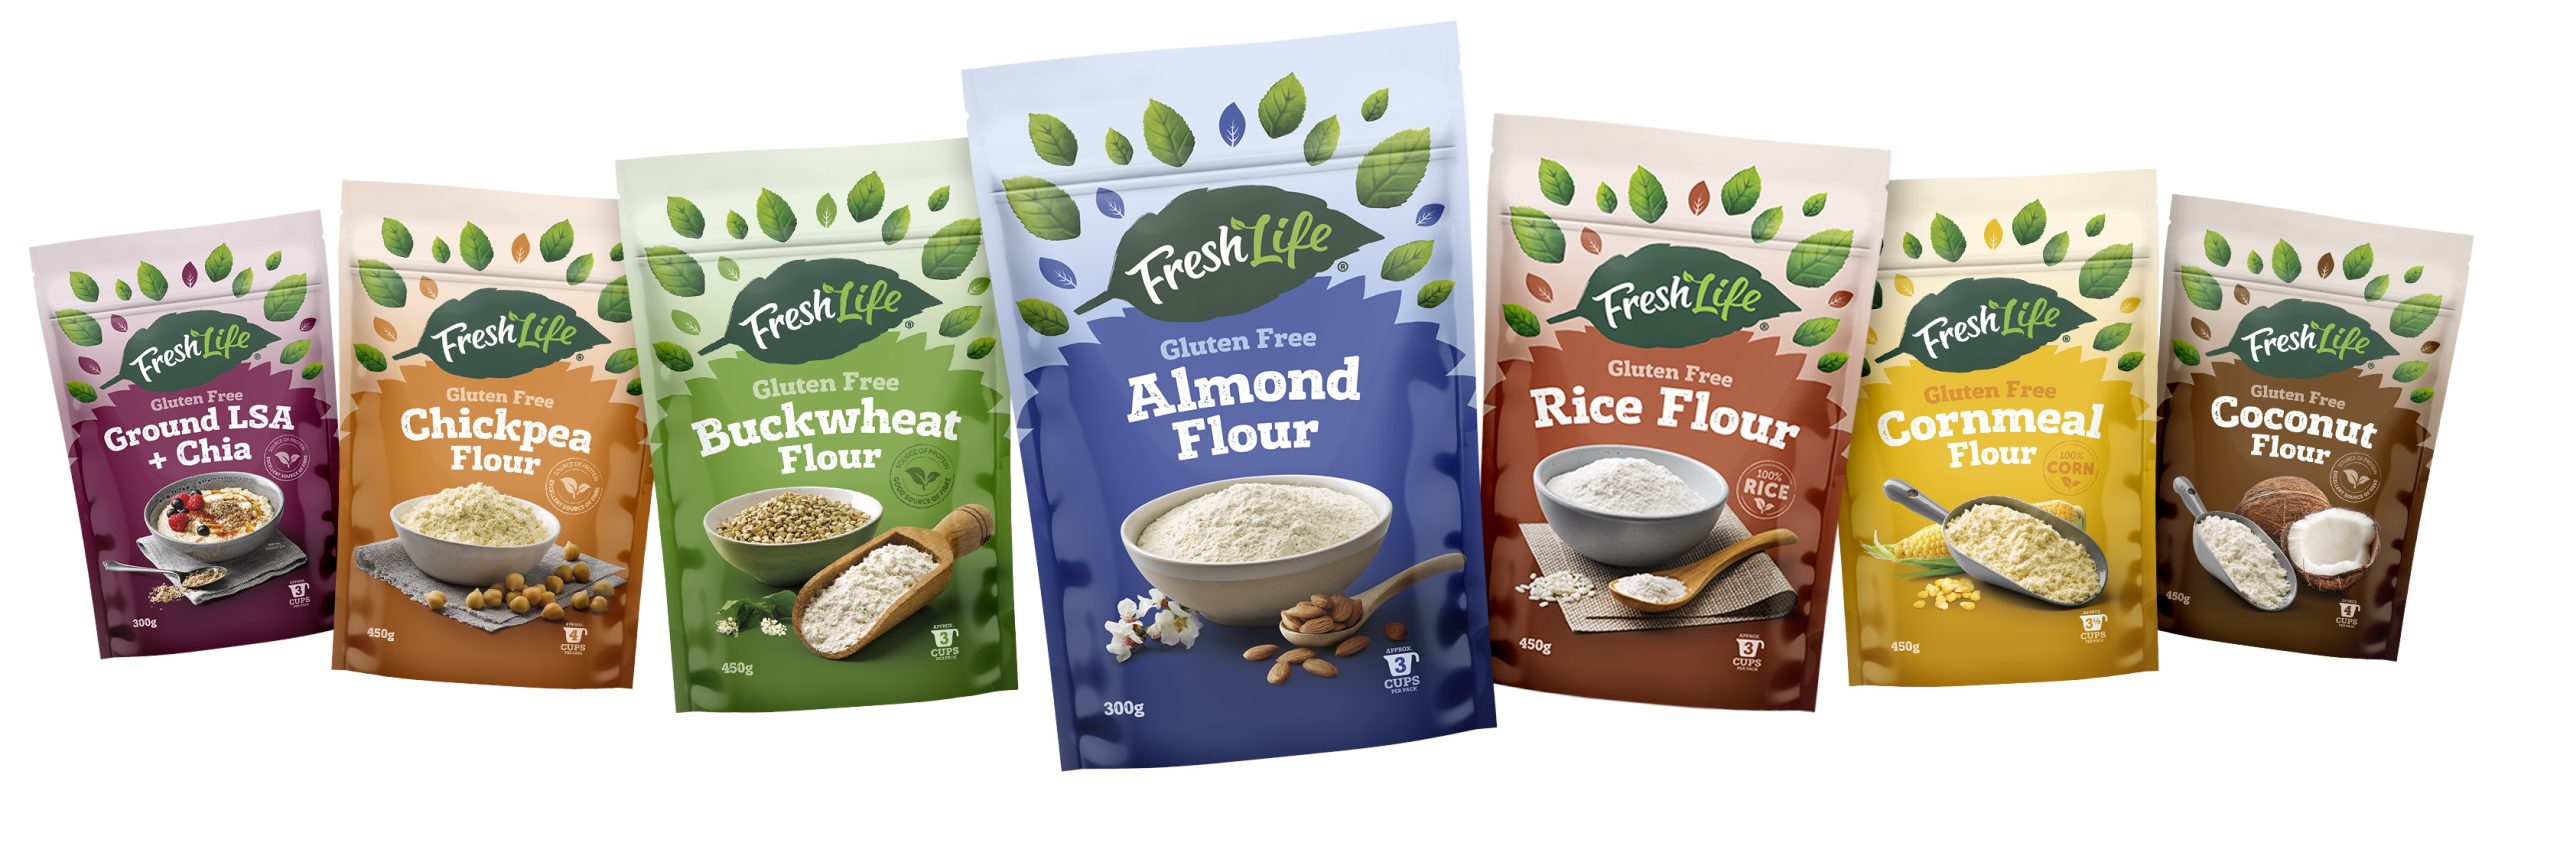 FreshLife Gluten Free Flour range, must-haves for Christmas